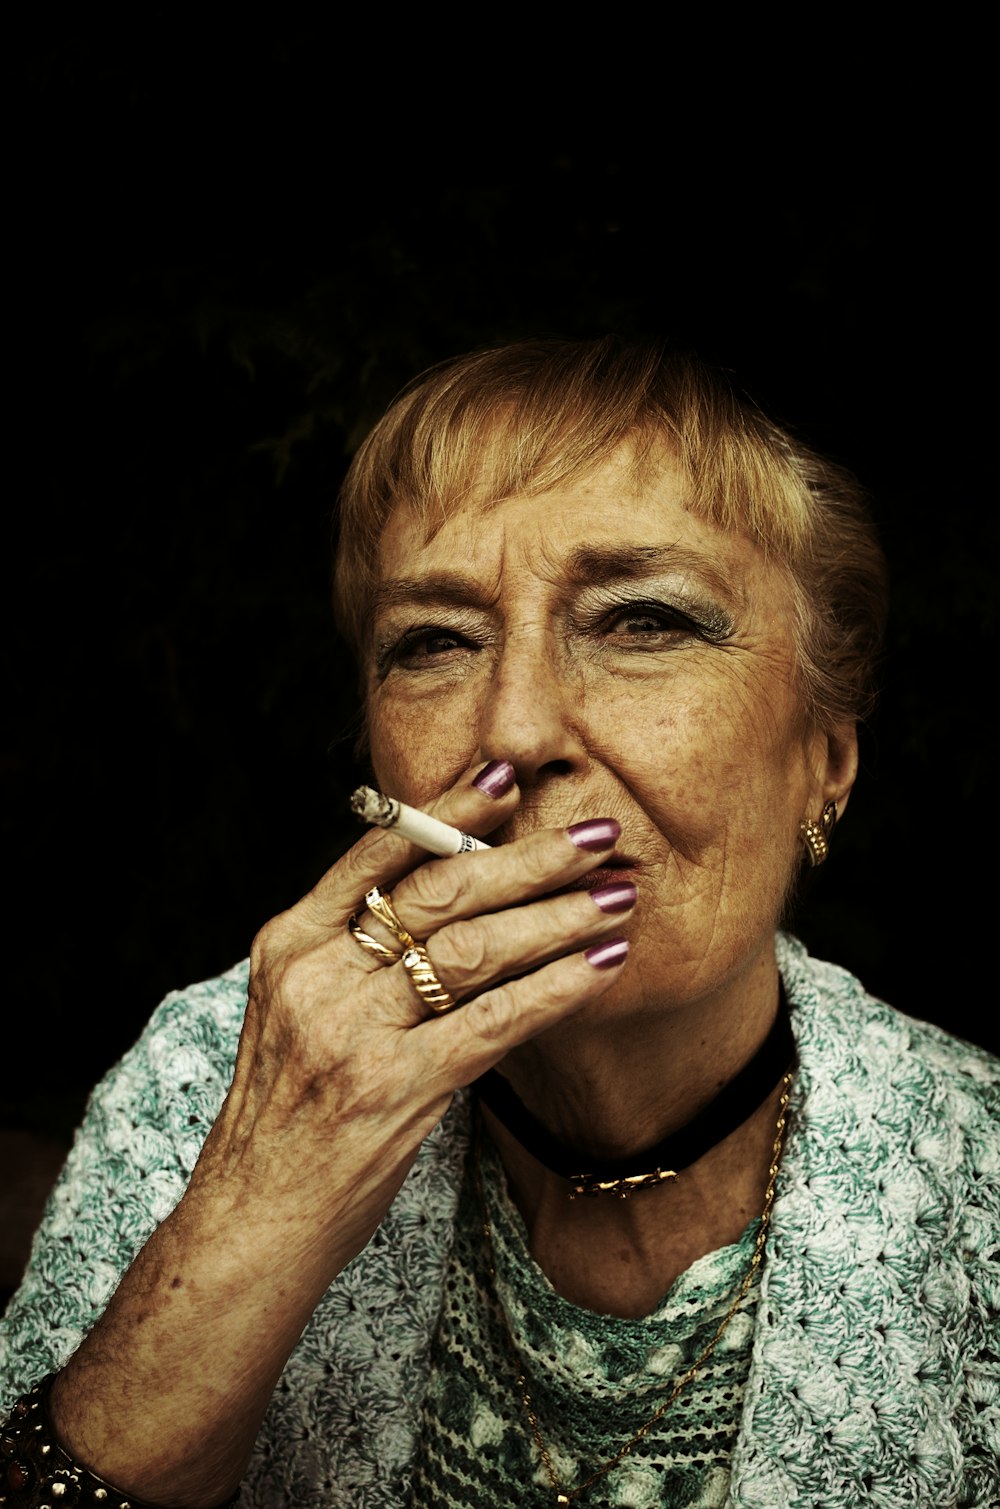 woman using cigarette